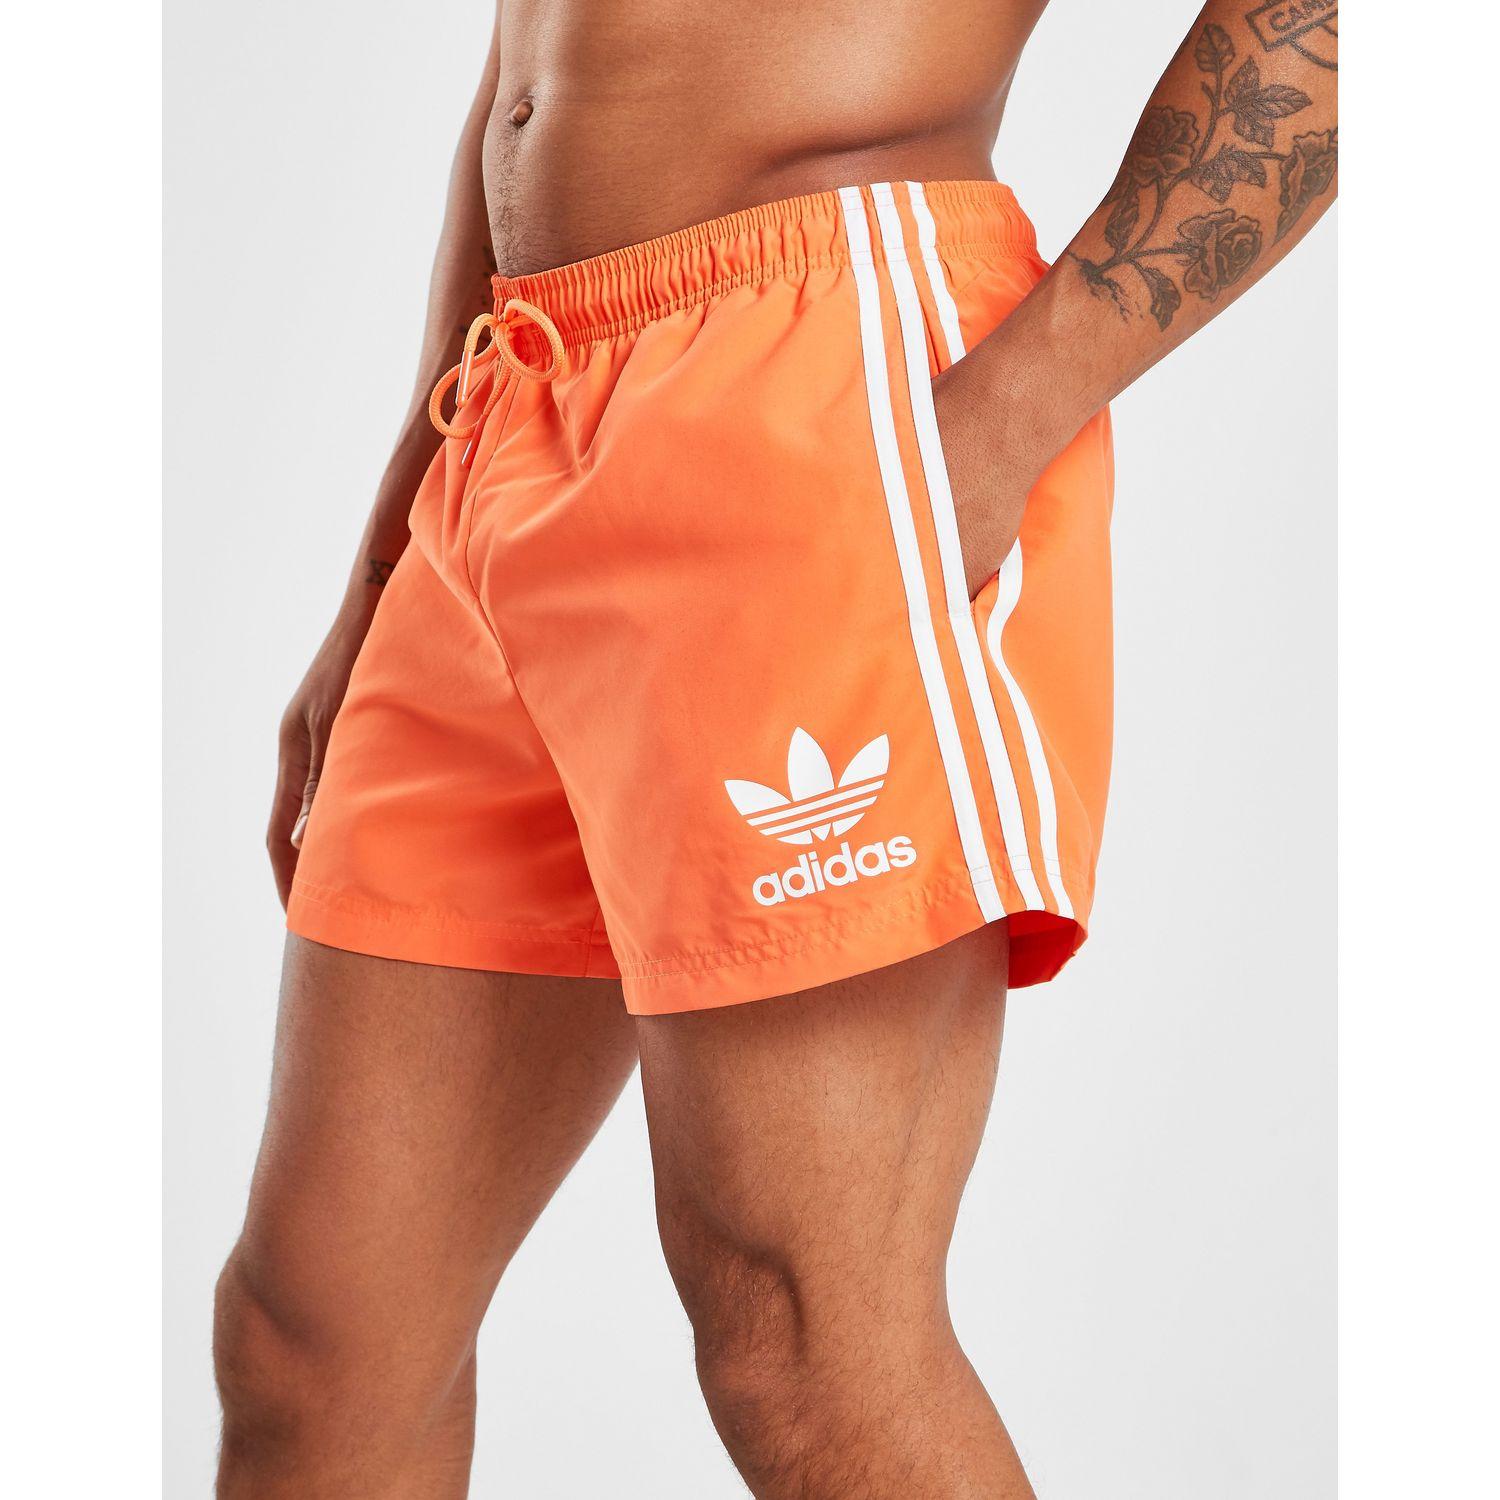 Buy > orange adidas swim shorts > in stock